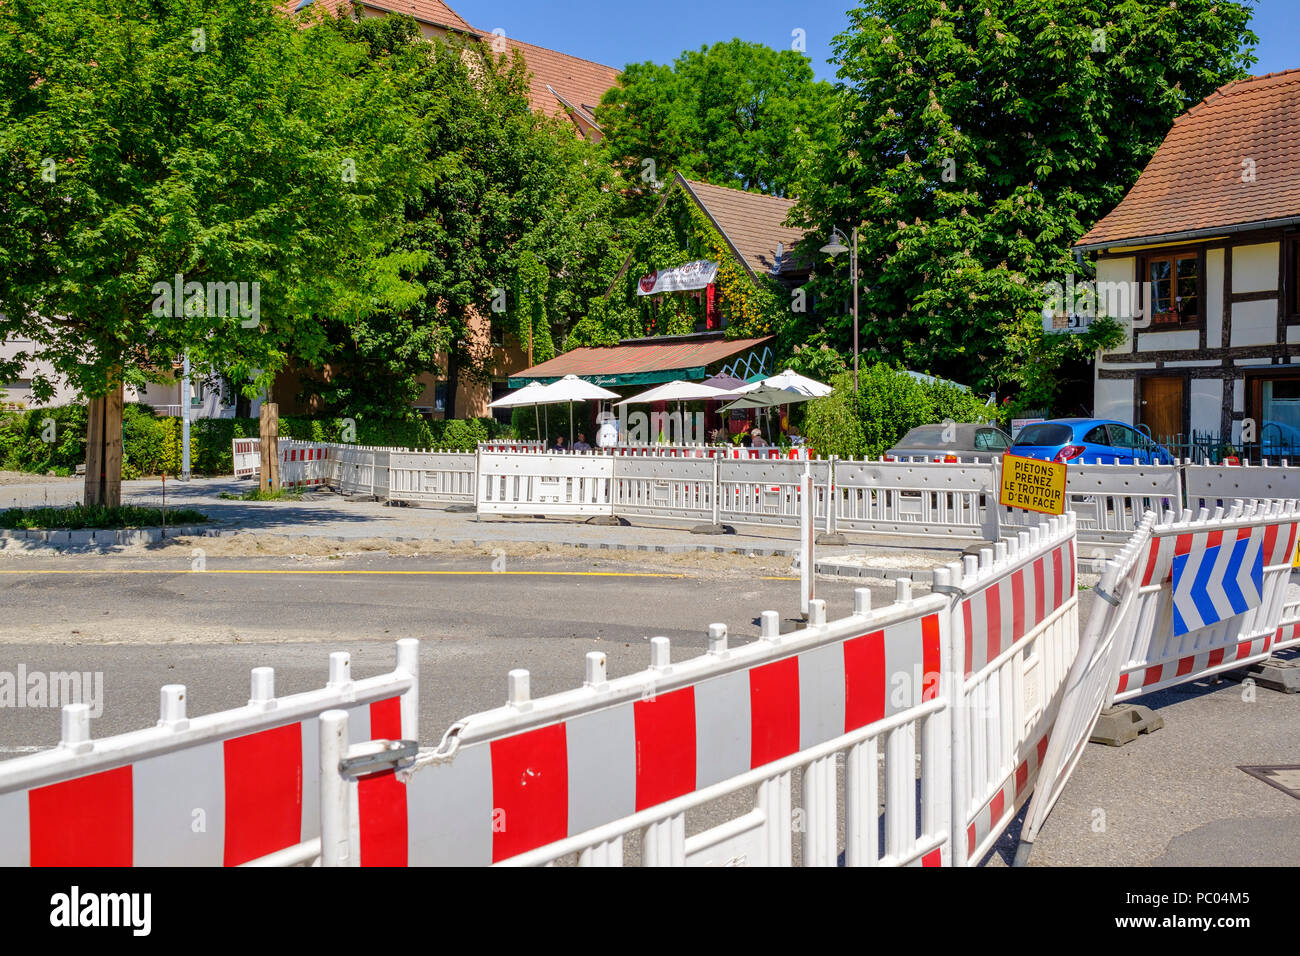 Strasburgo, tram preliminare sito in costruzione, linea e estensione, sicurezza barriere in plastica, quadrato, case, Alsazia, Francia, Europa Foto Stock